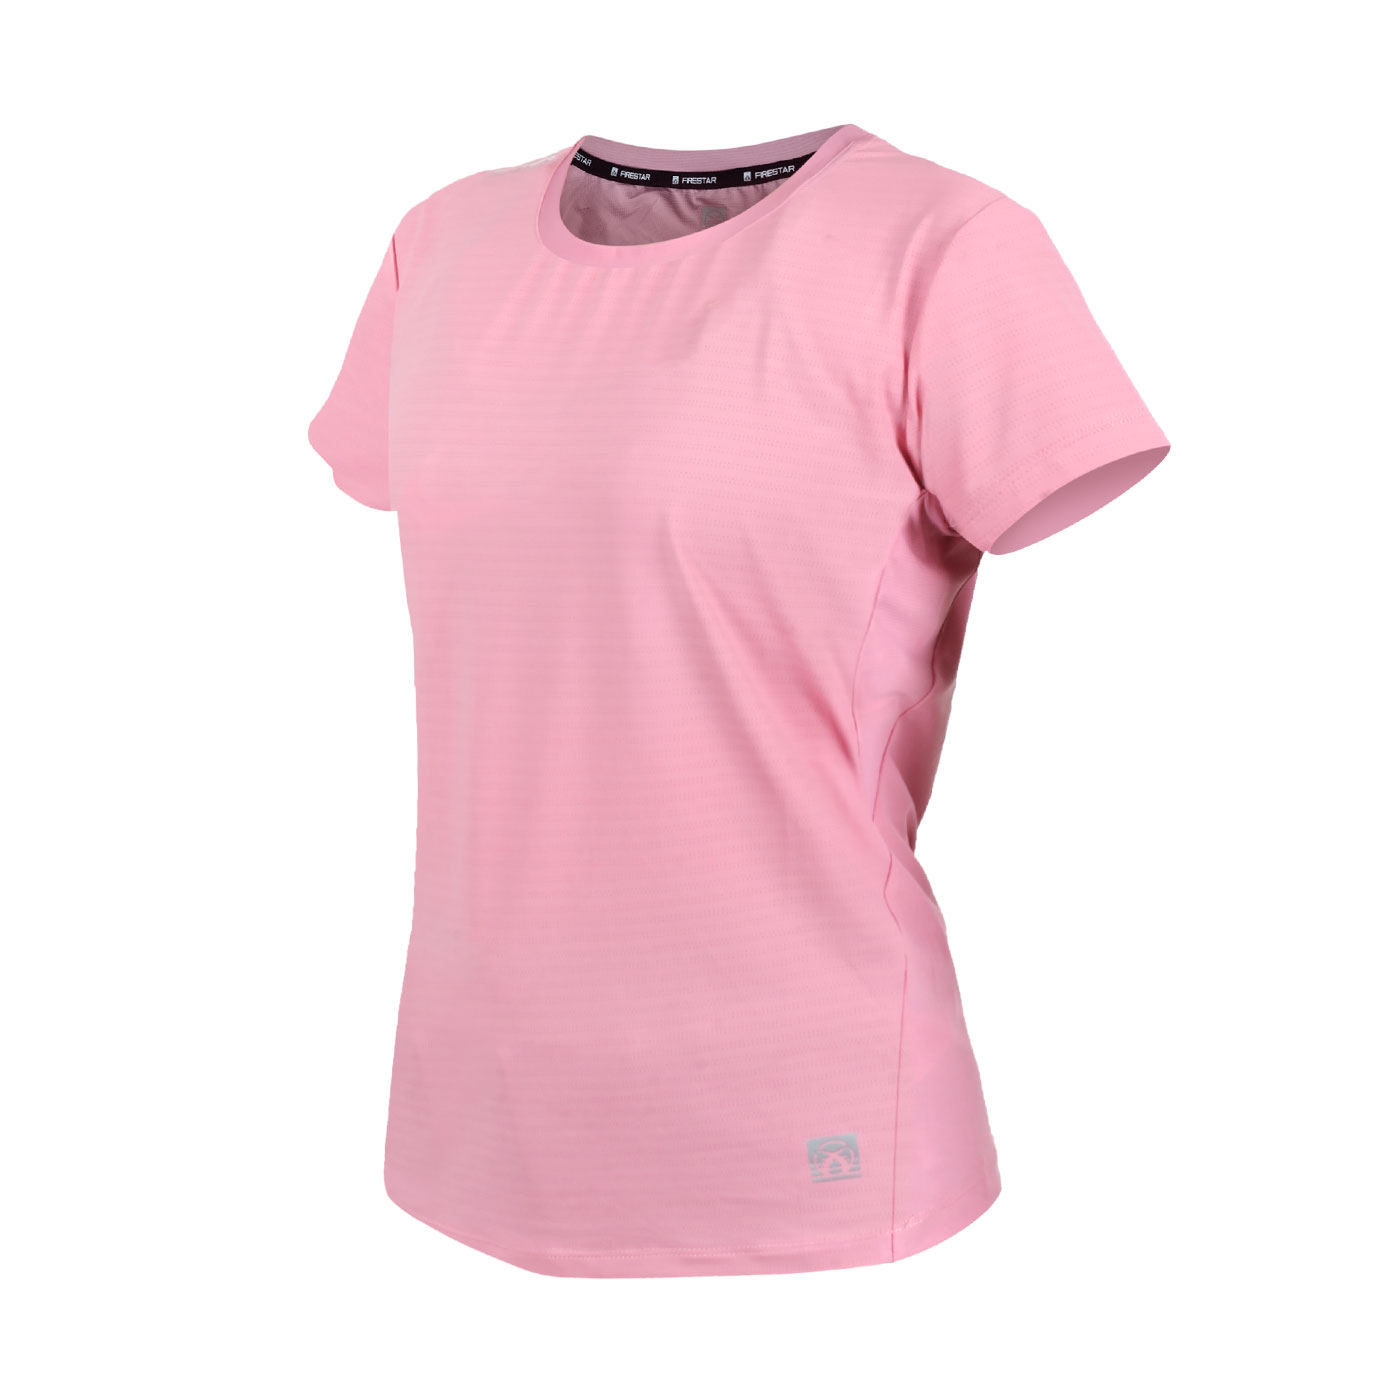 FIRESTAR 女款彈性圓領短袖T恤 DL262-43 - 粉紅白